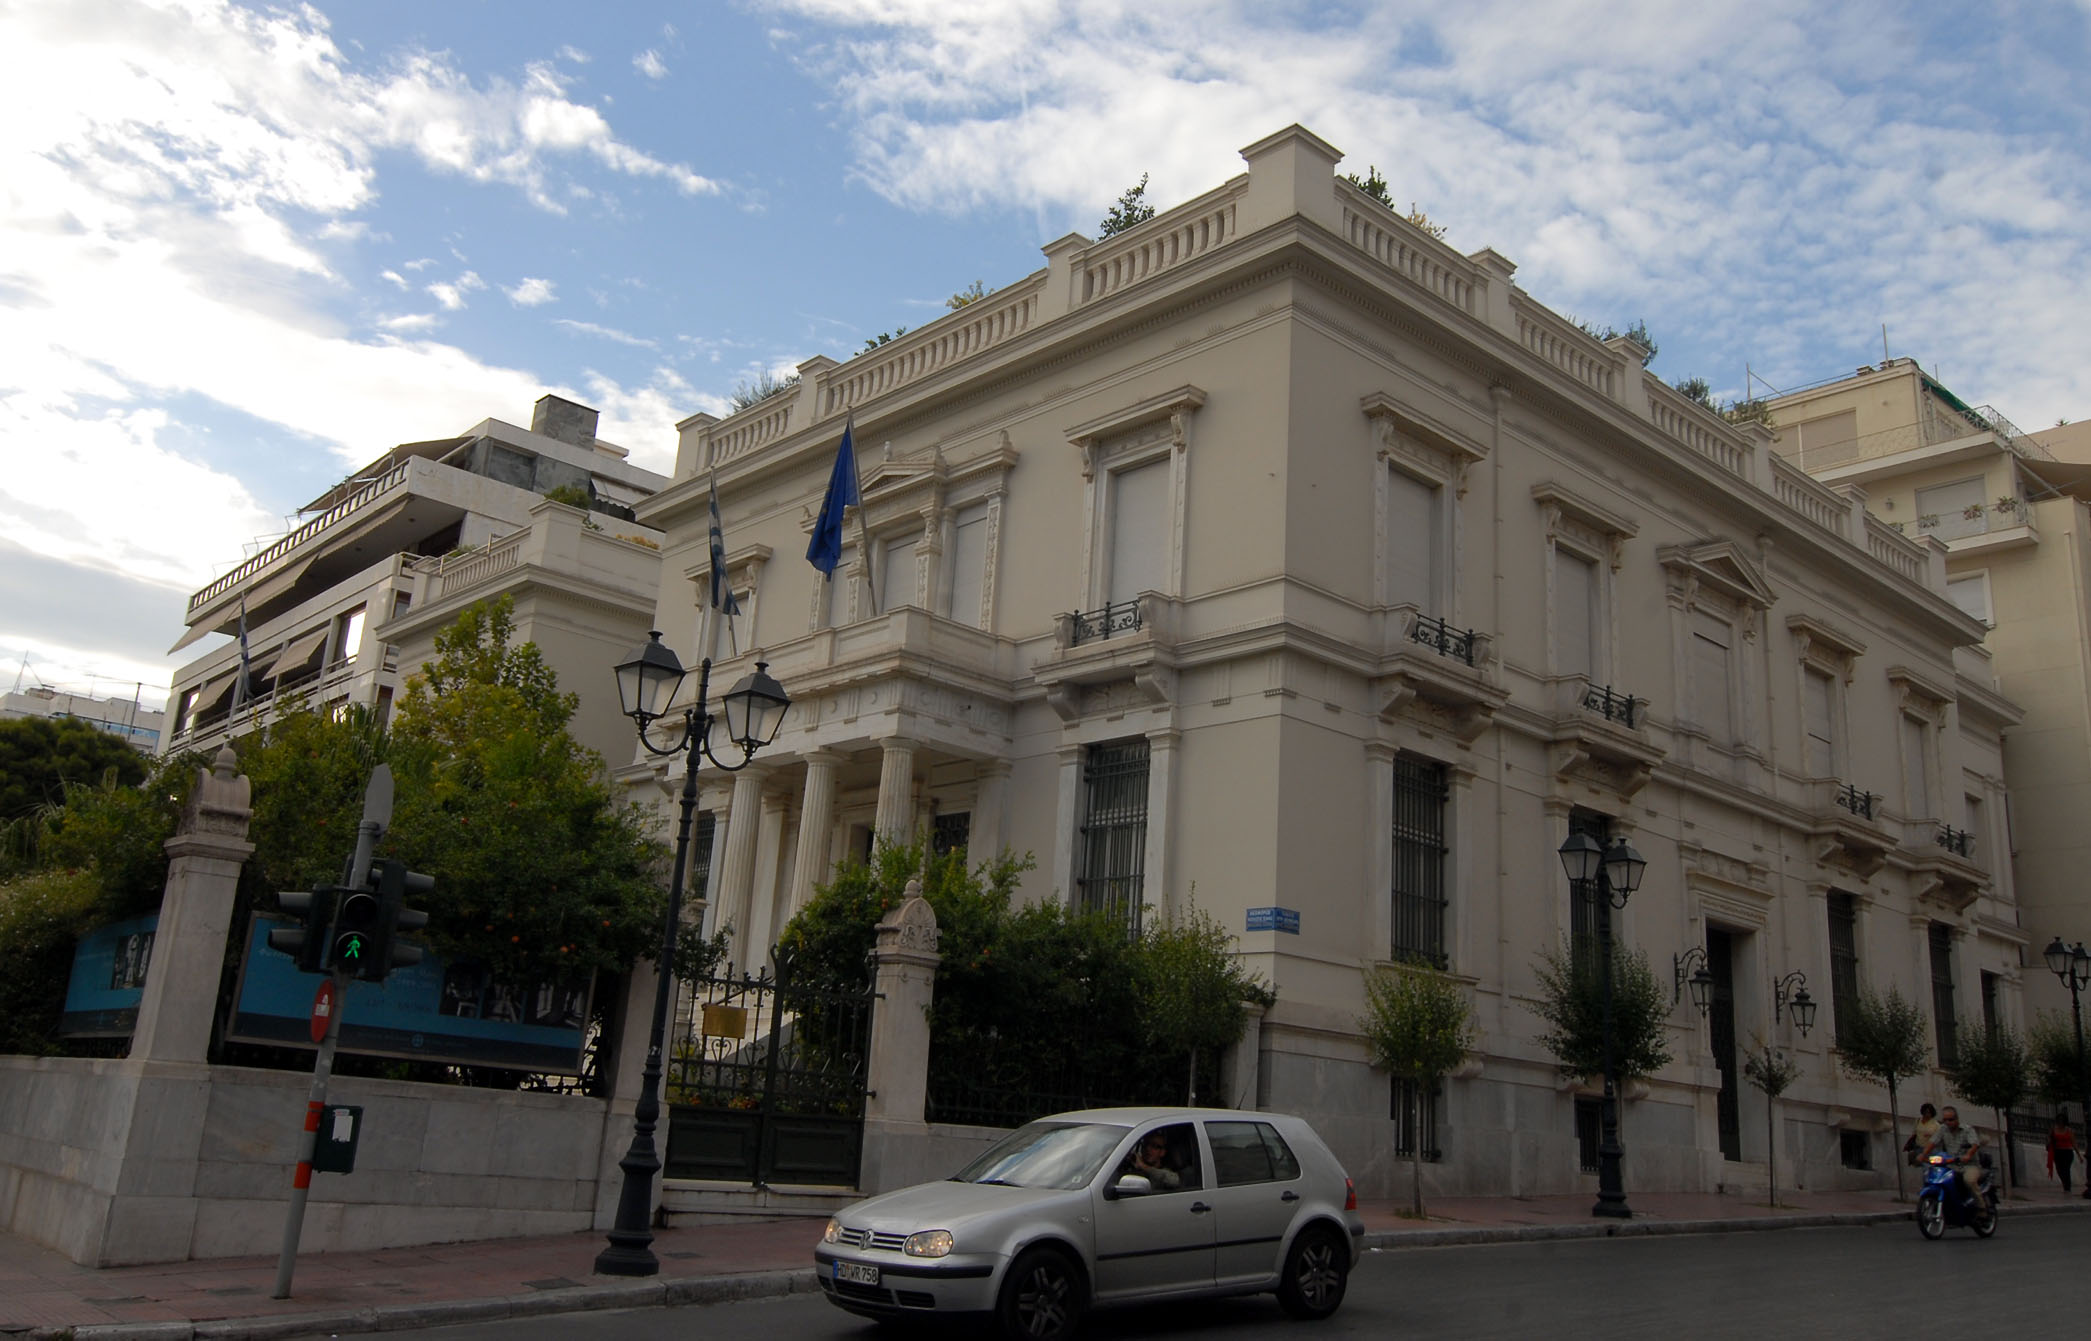 Σε τριμελή επιτροπή προσωρινά η διεύθυνση του Μουσείου Μπενάκη